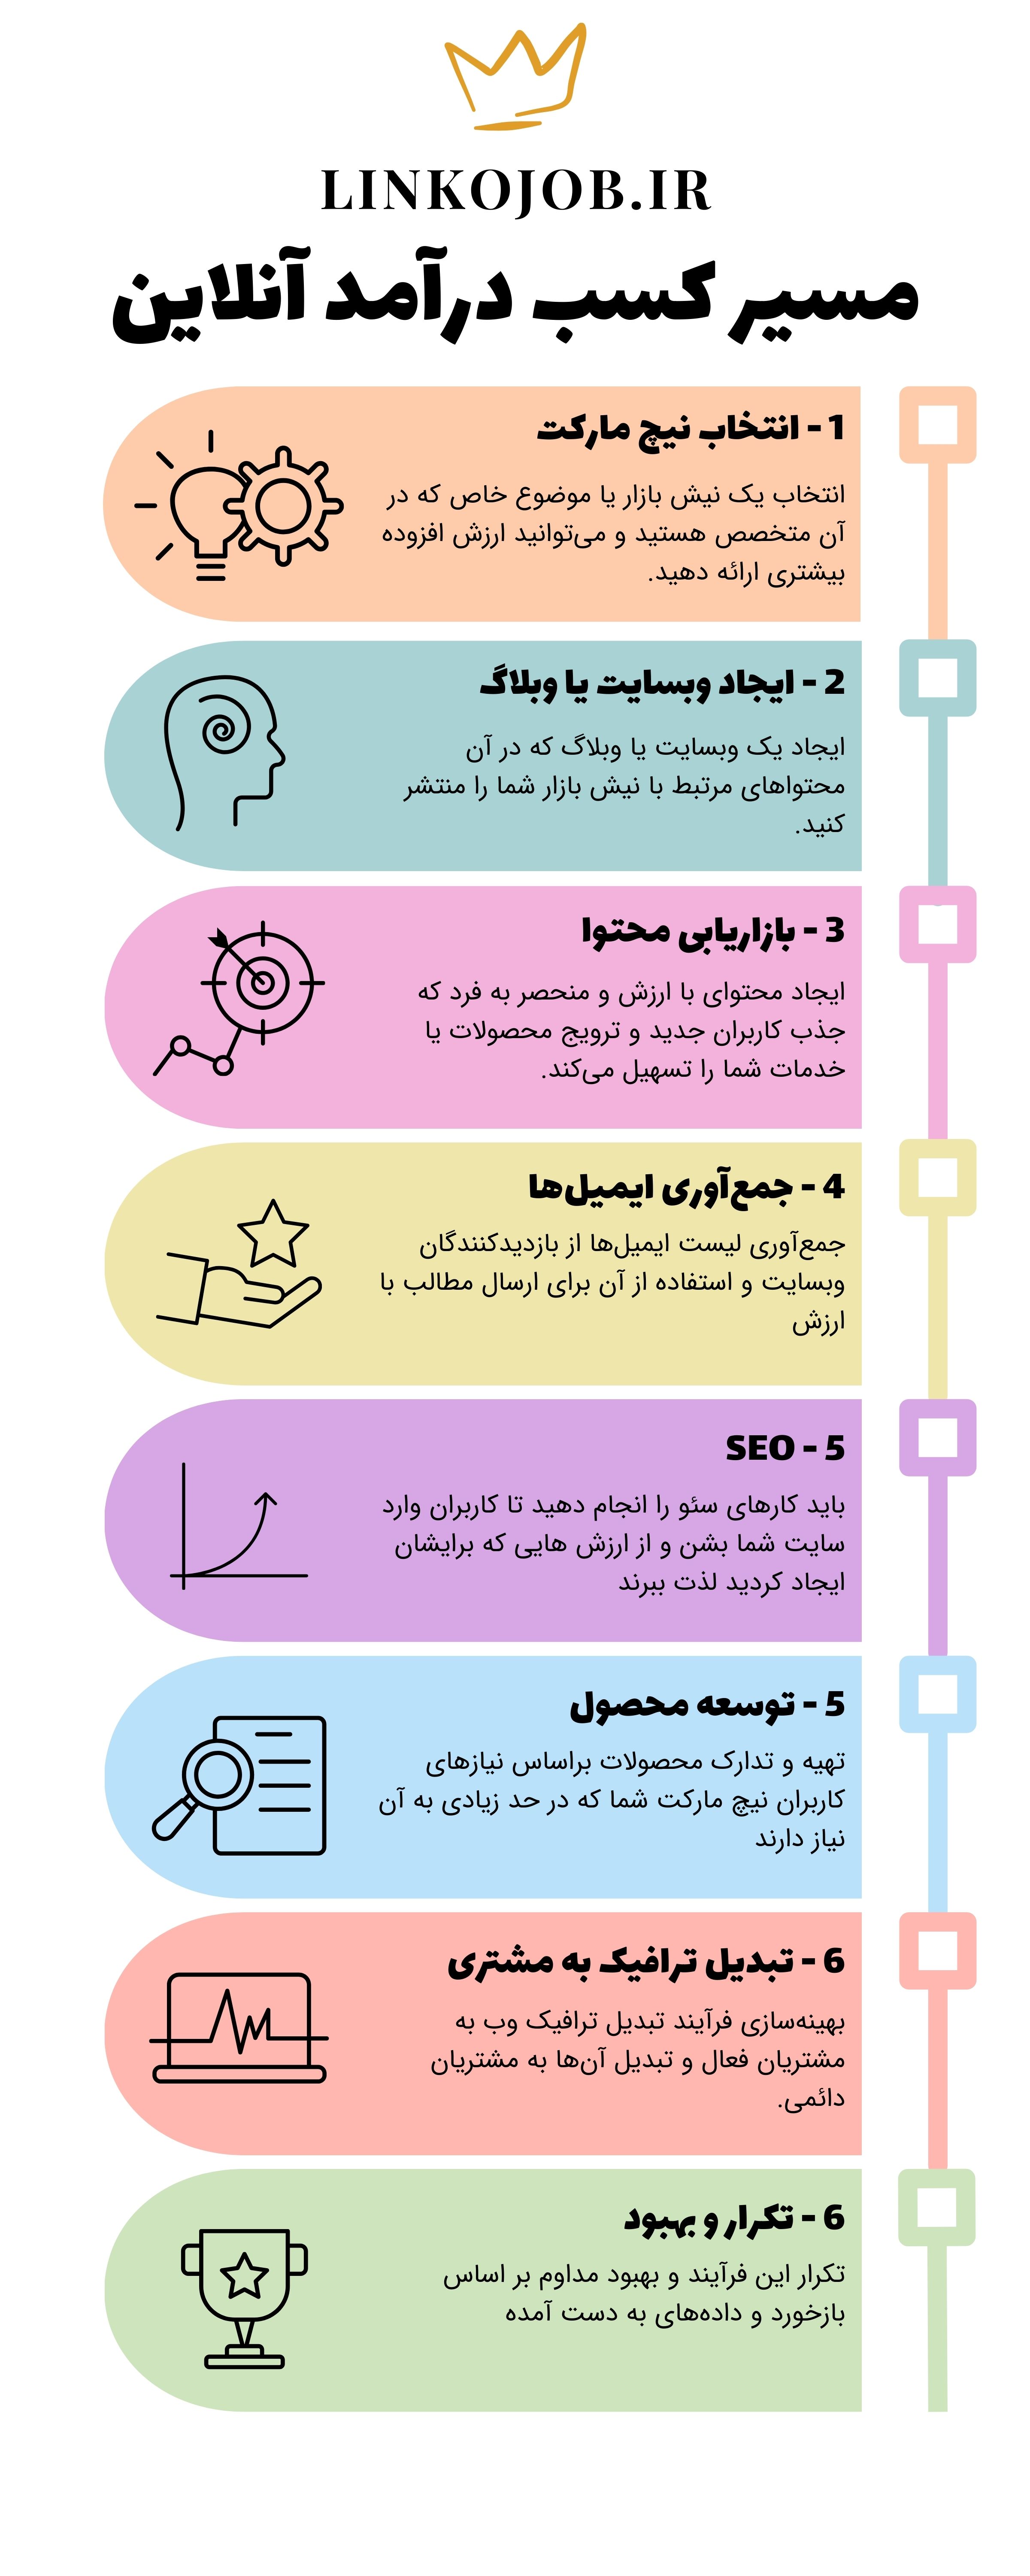 بهترین راههای کسب درامد انلاین و درامد انلاین راحت در ایران بصورت تضمینی و رایگان و واقعی